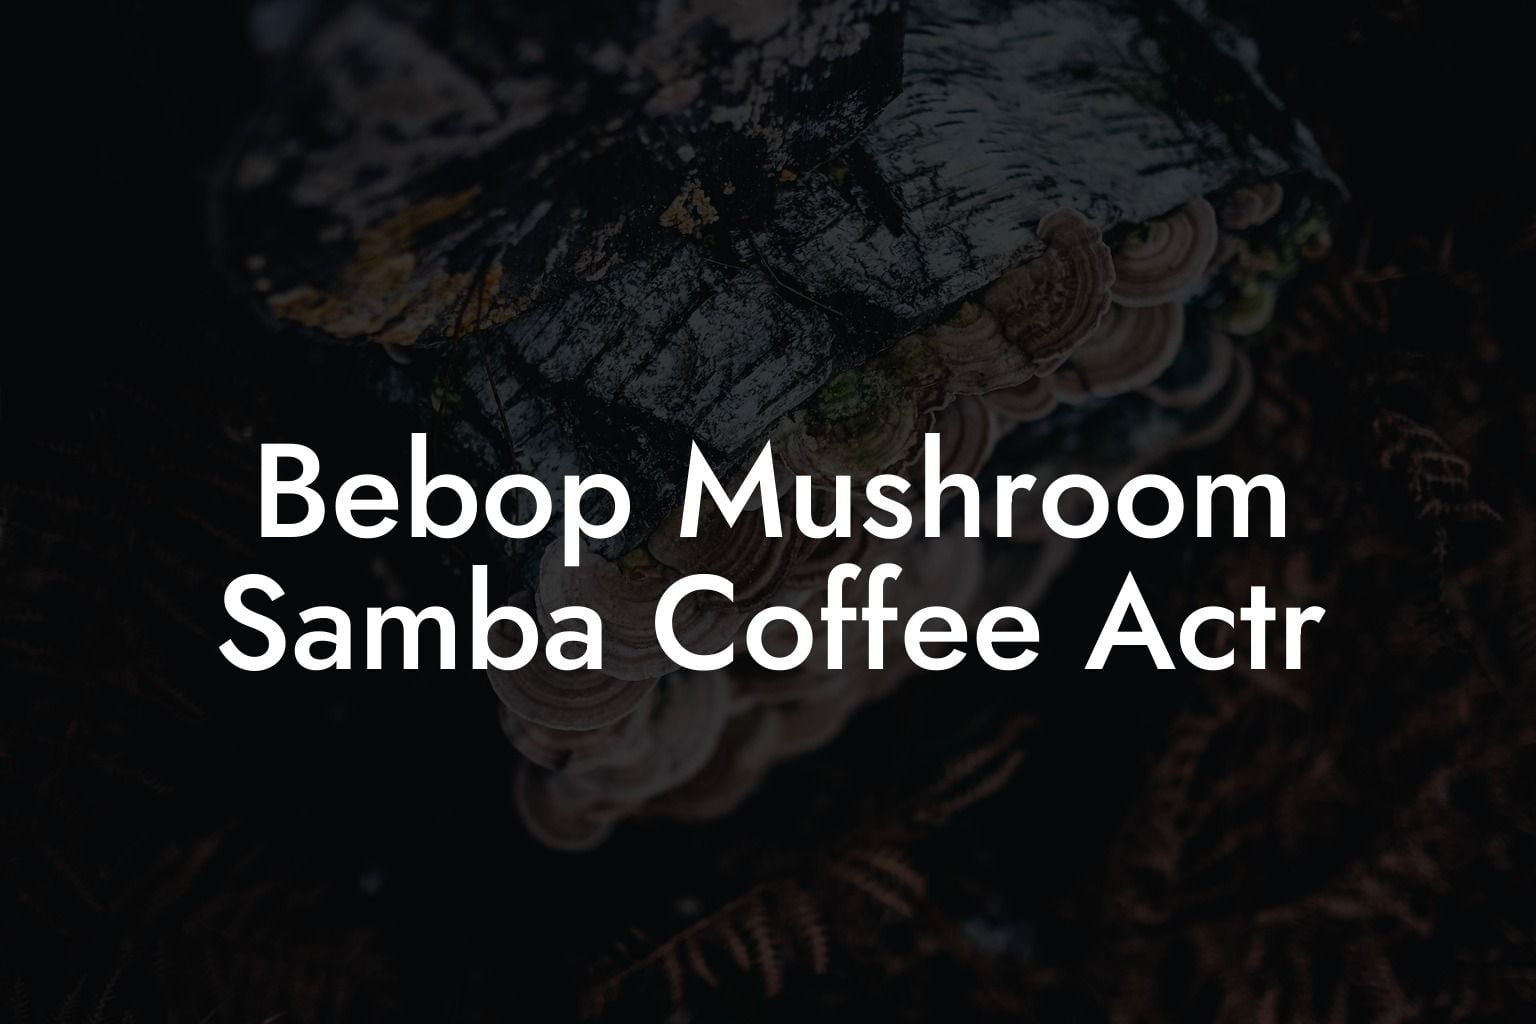 Bebop Mushroom Samba Coffee Actr Mr Mushroom 9259